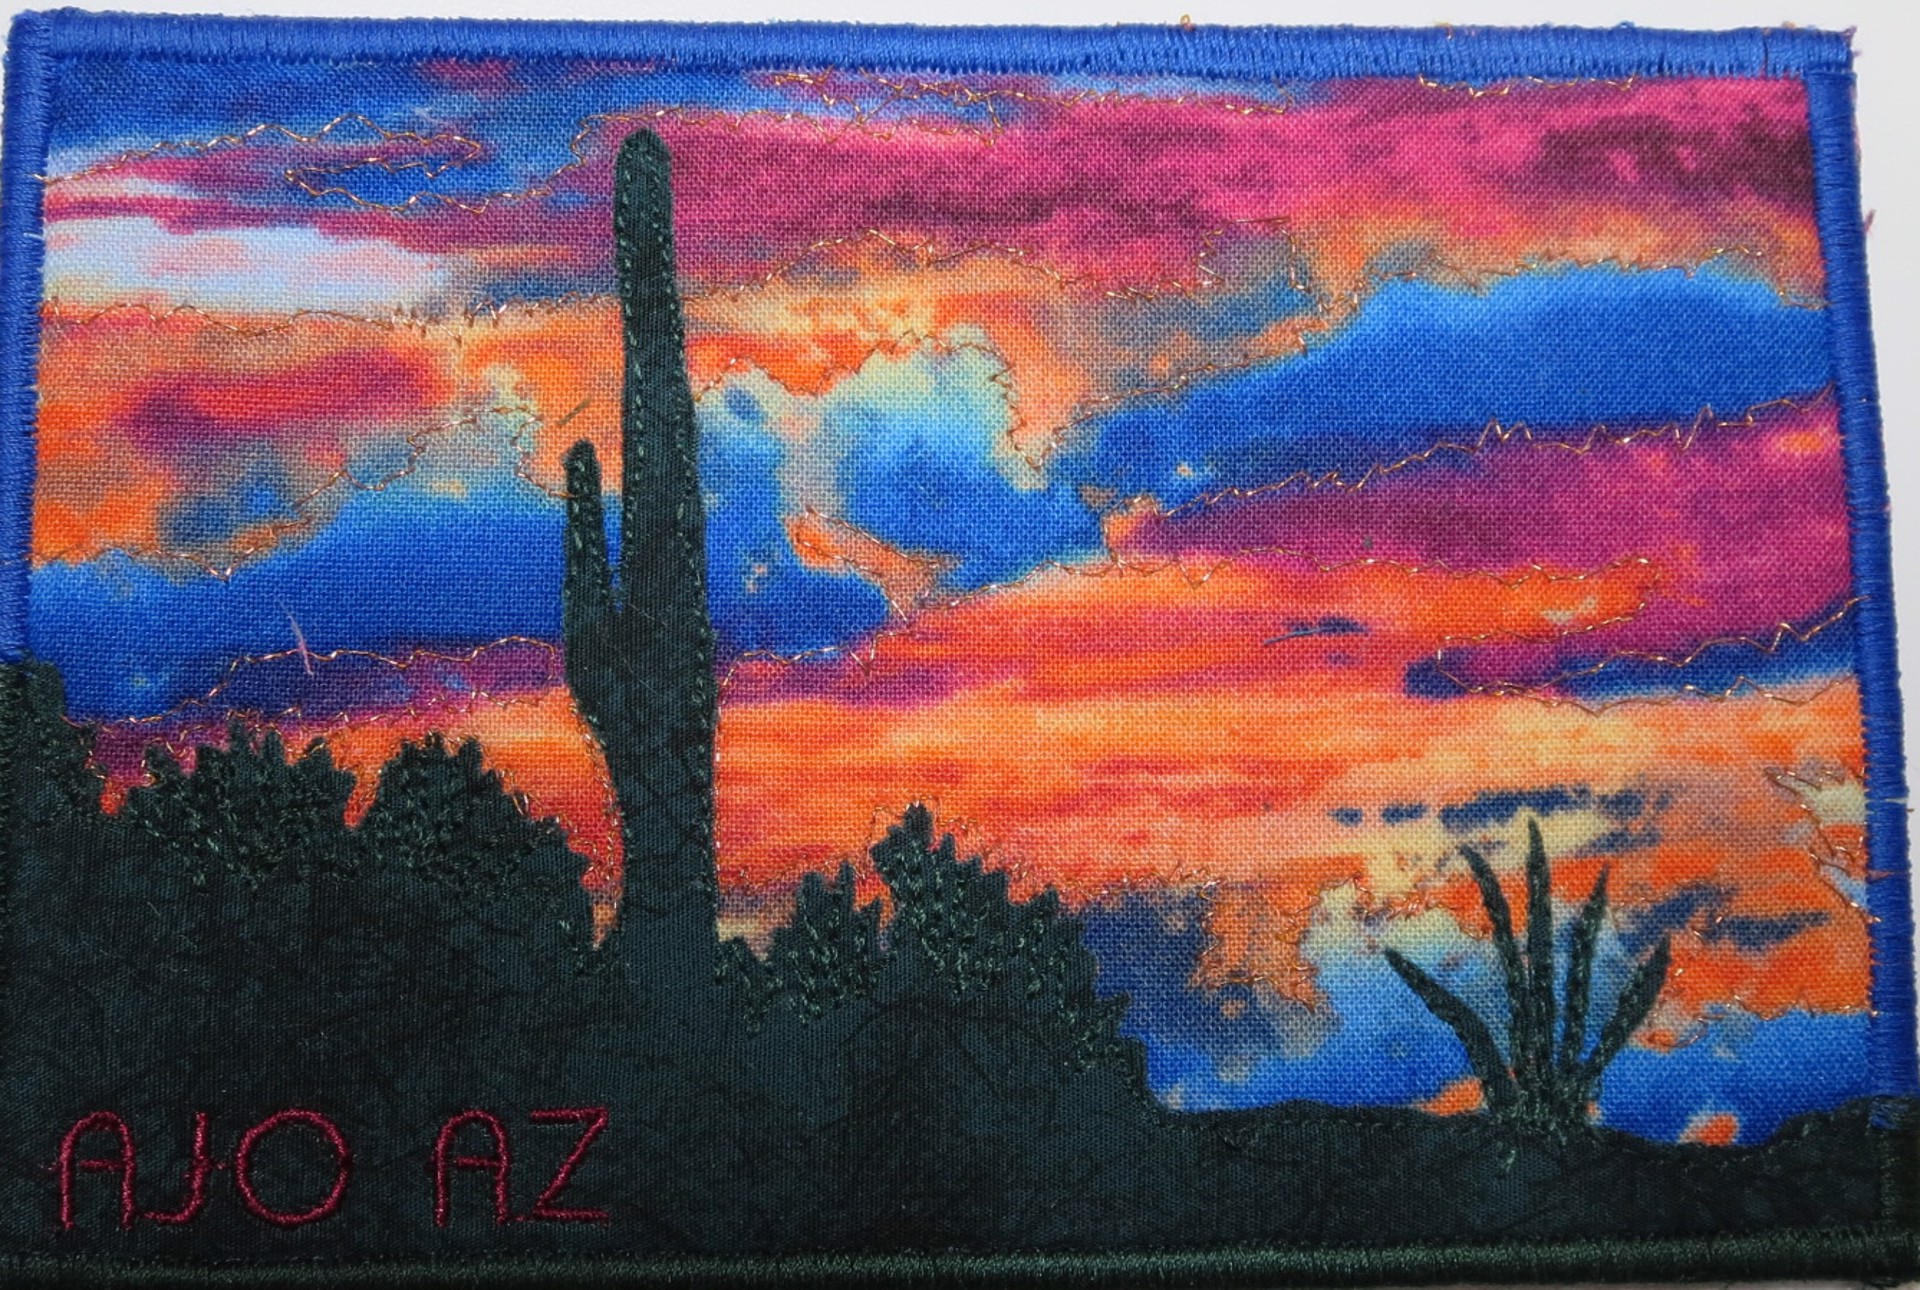 Saguaro @ sunset 3 by Cheryl Langer